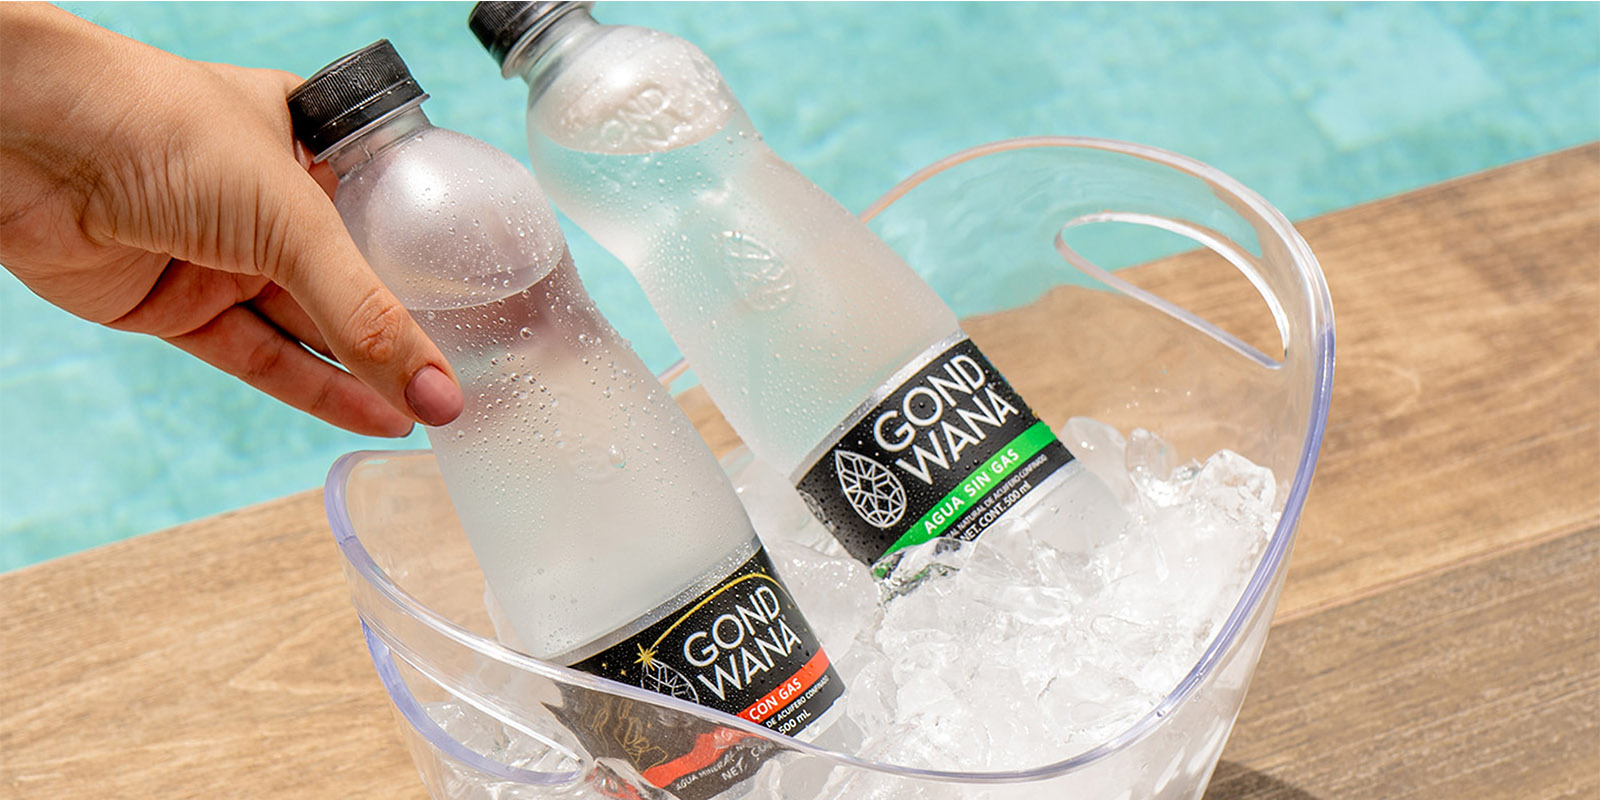 Dos botellas de agua mineral premium Gond Wana, colocadas en una hielera cerca de una piscina, diseño de packaging por Tridimage.